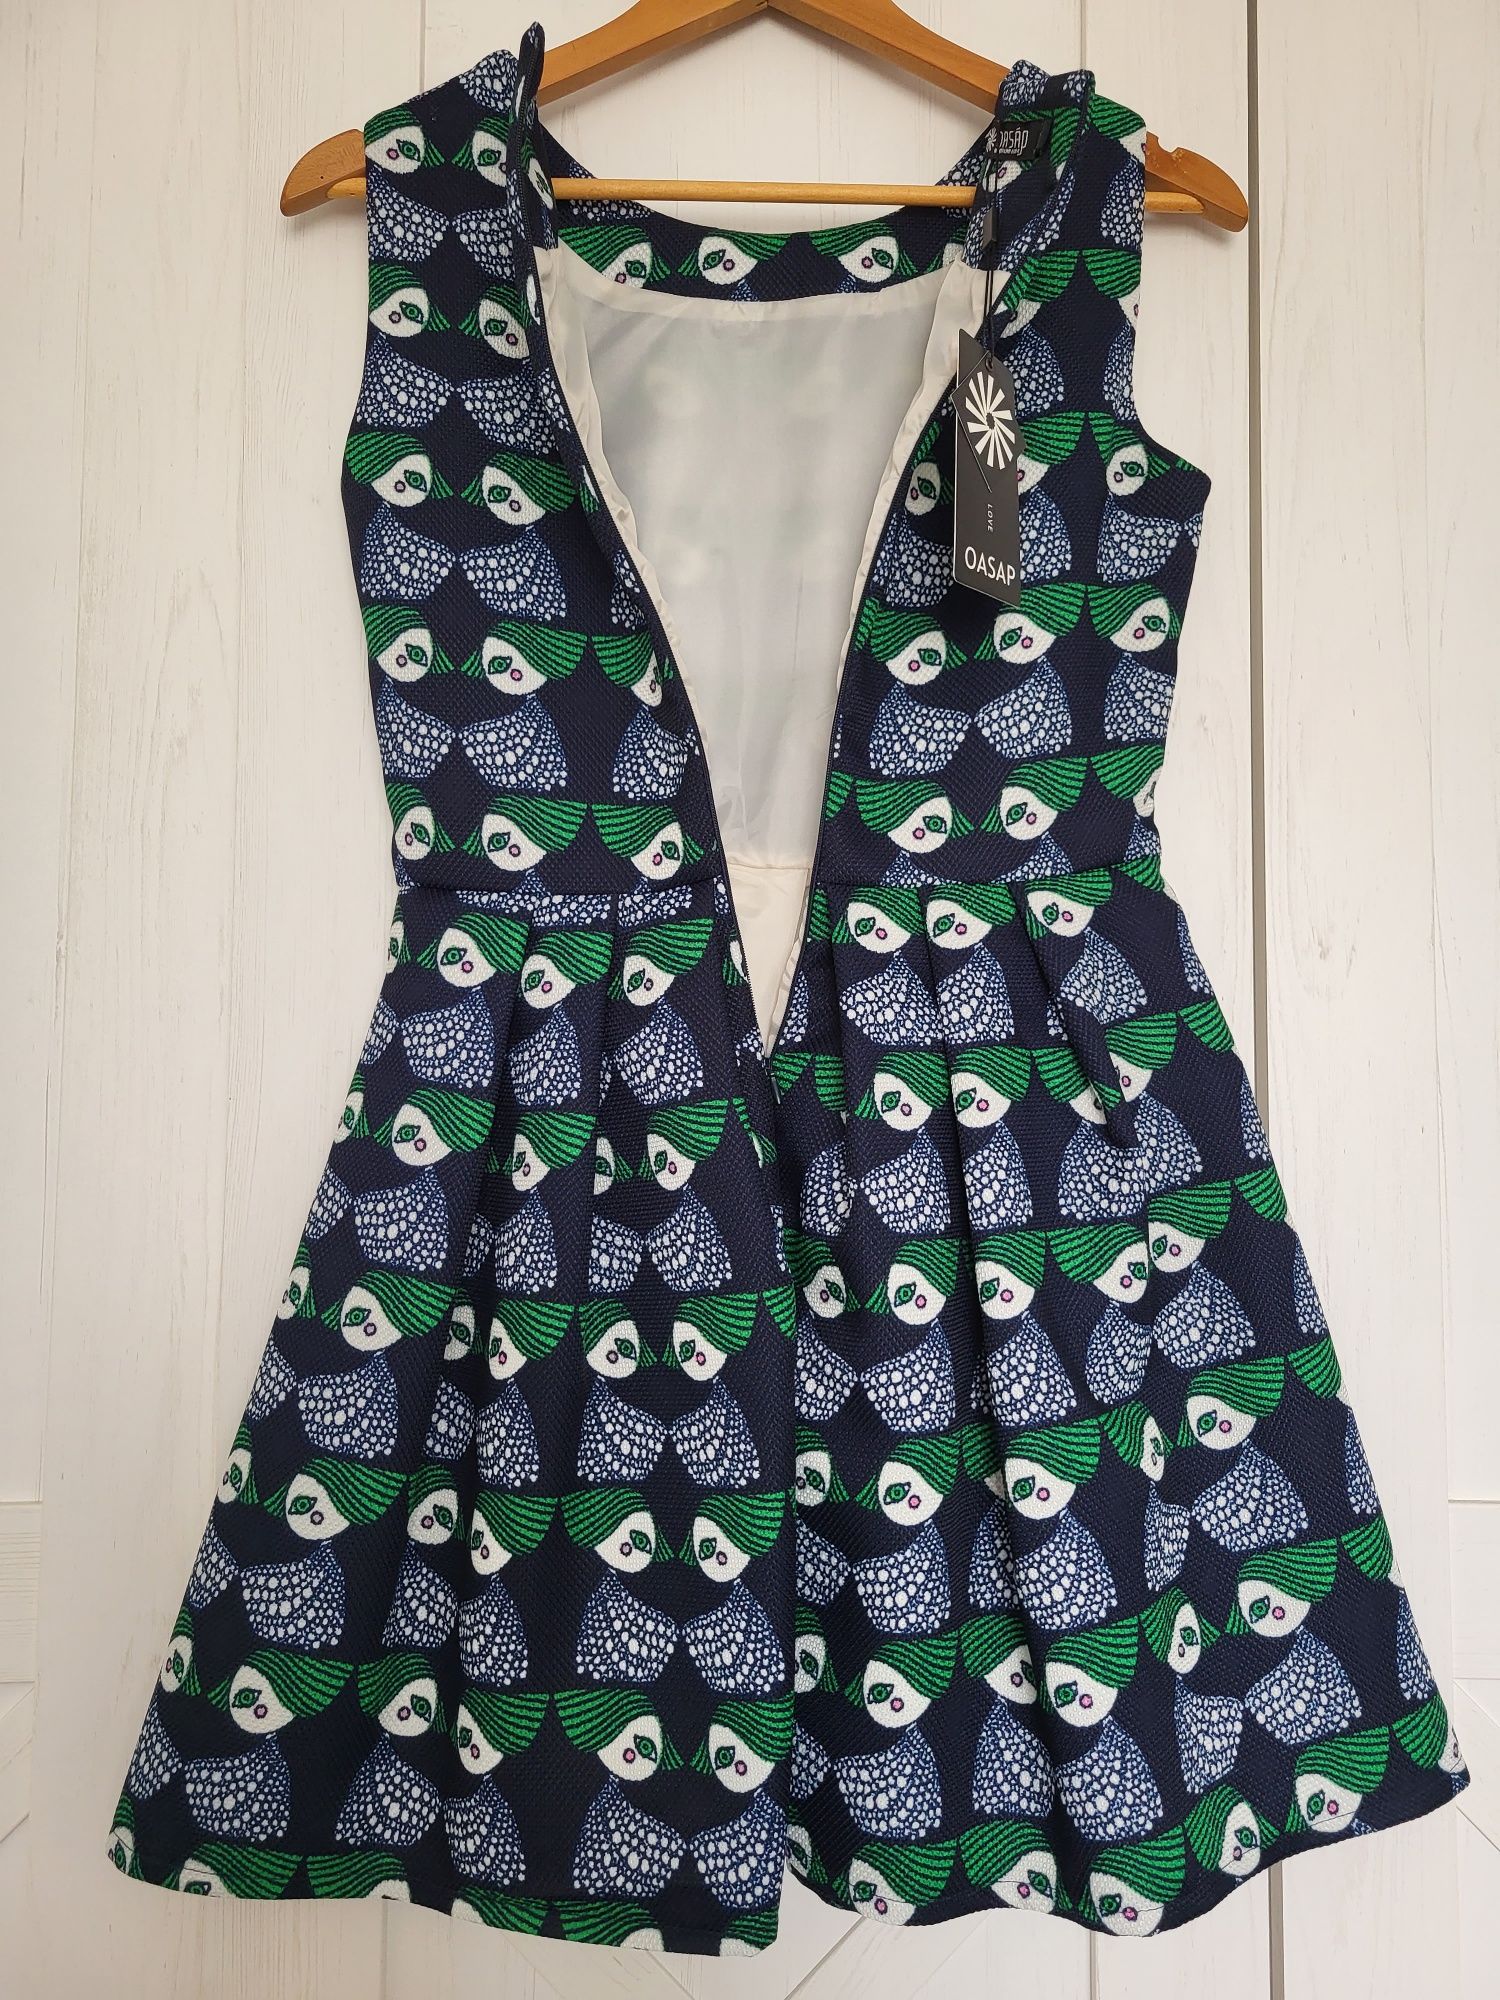 Retro sukienka gruby materiał zara mango vintage granatowa wzór